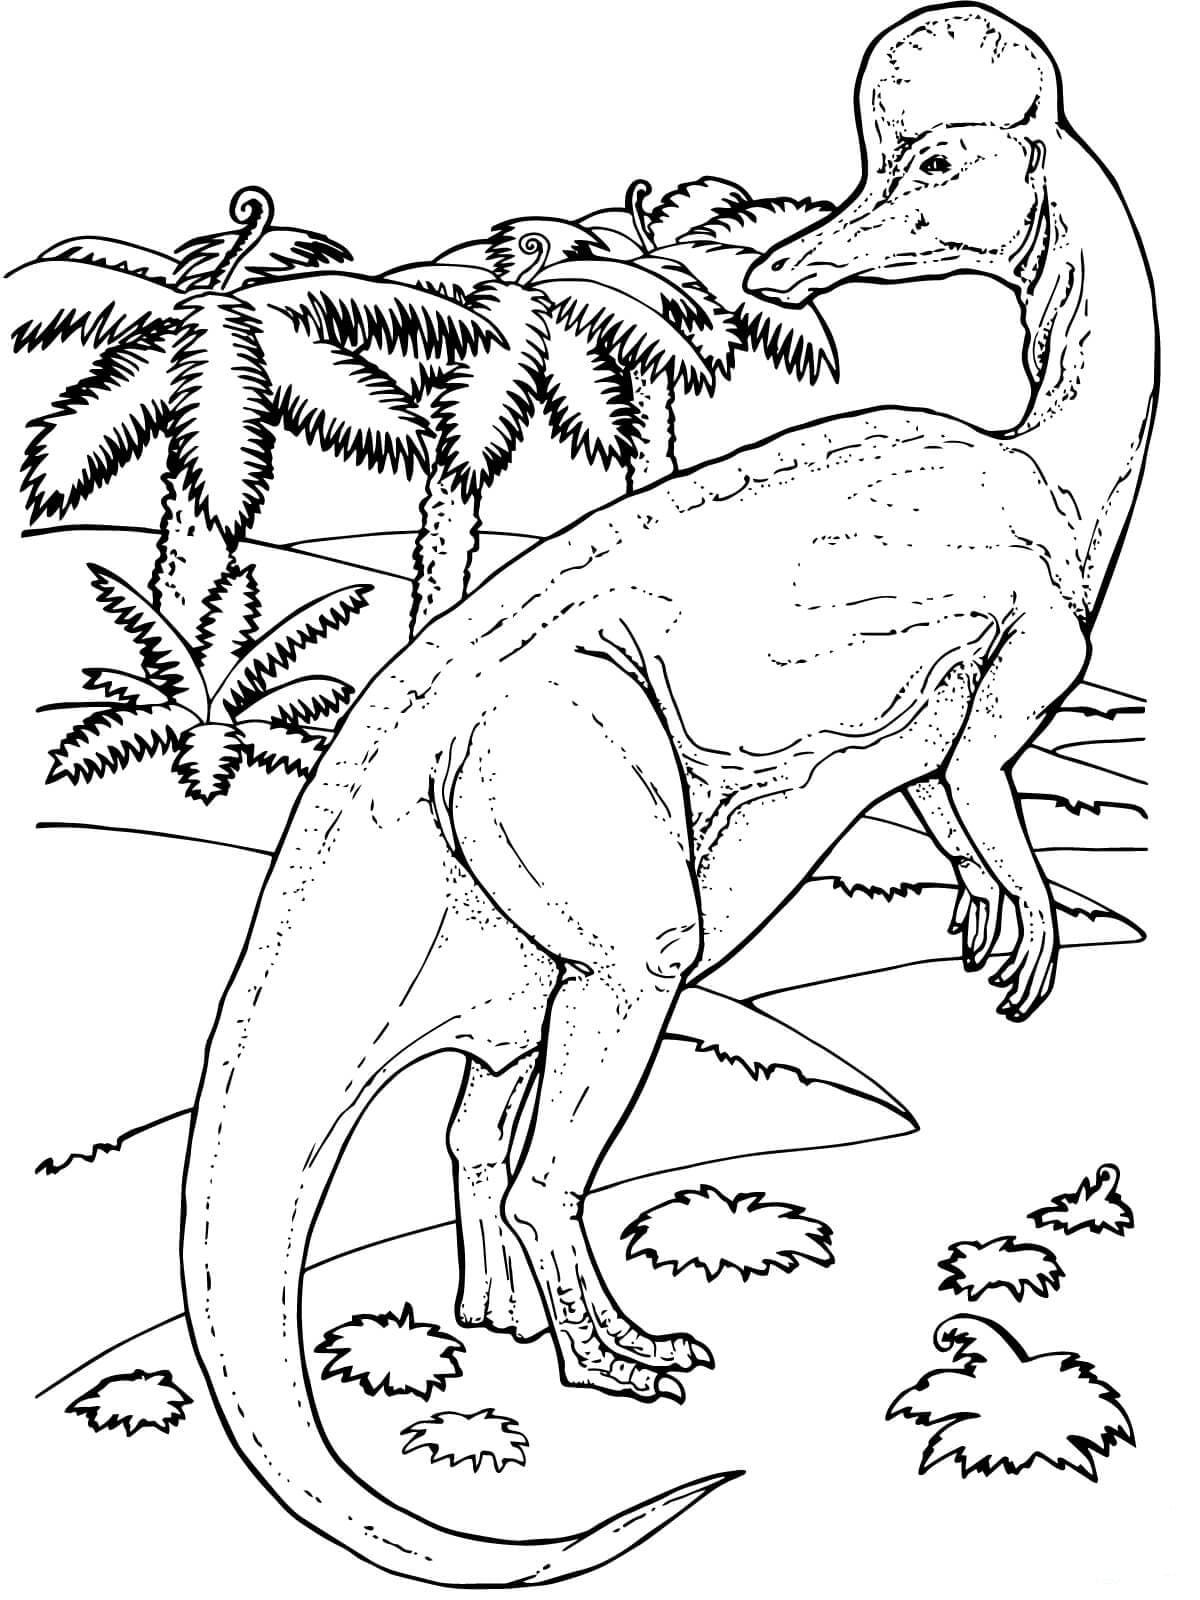 Раскраски динозавры формат а4. Динозавры Юрского периода раскраска. Динозавры для раскрашивания парк Юрского периода. Раскраски динозавры Jurassic World. Раскраска Паразауролоф мир Юрского периода.